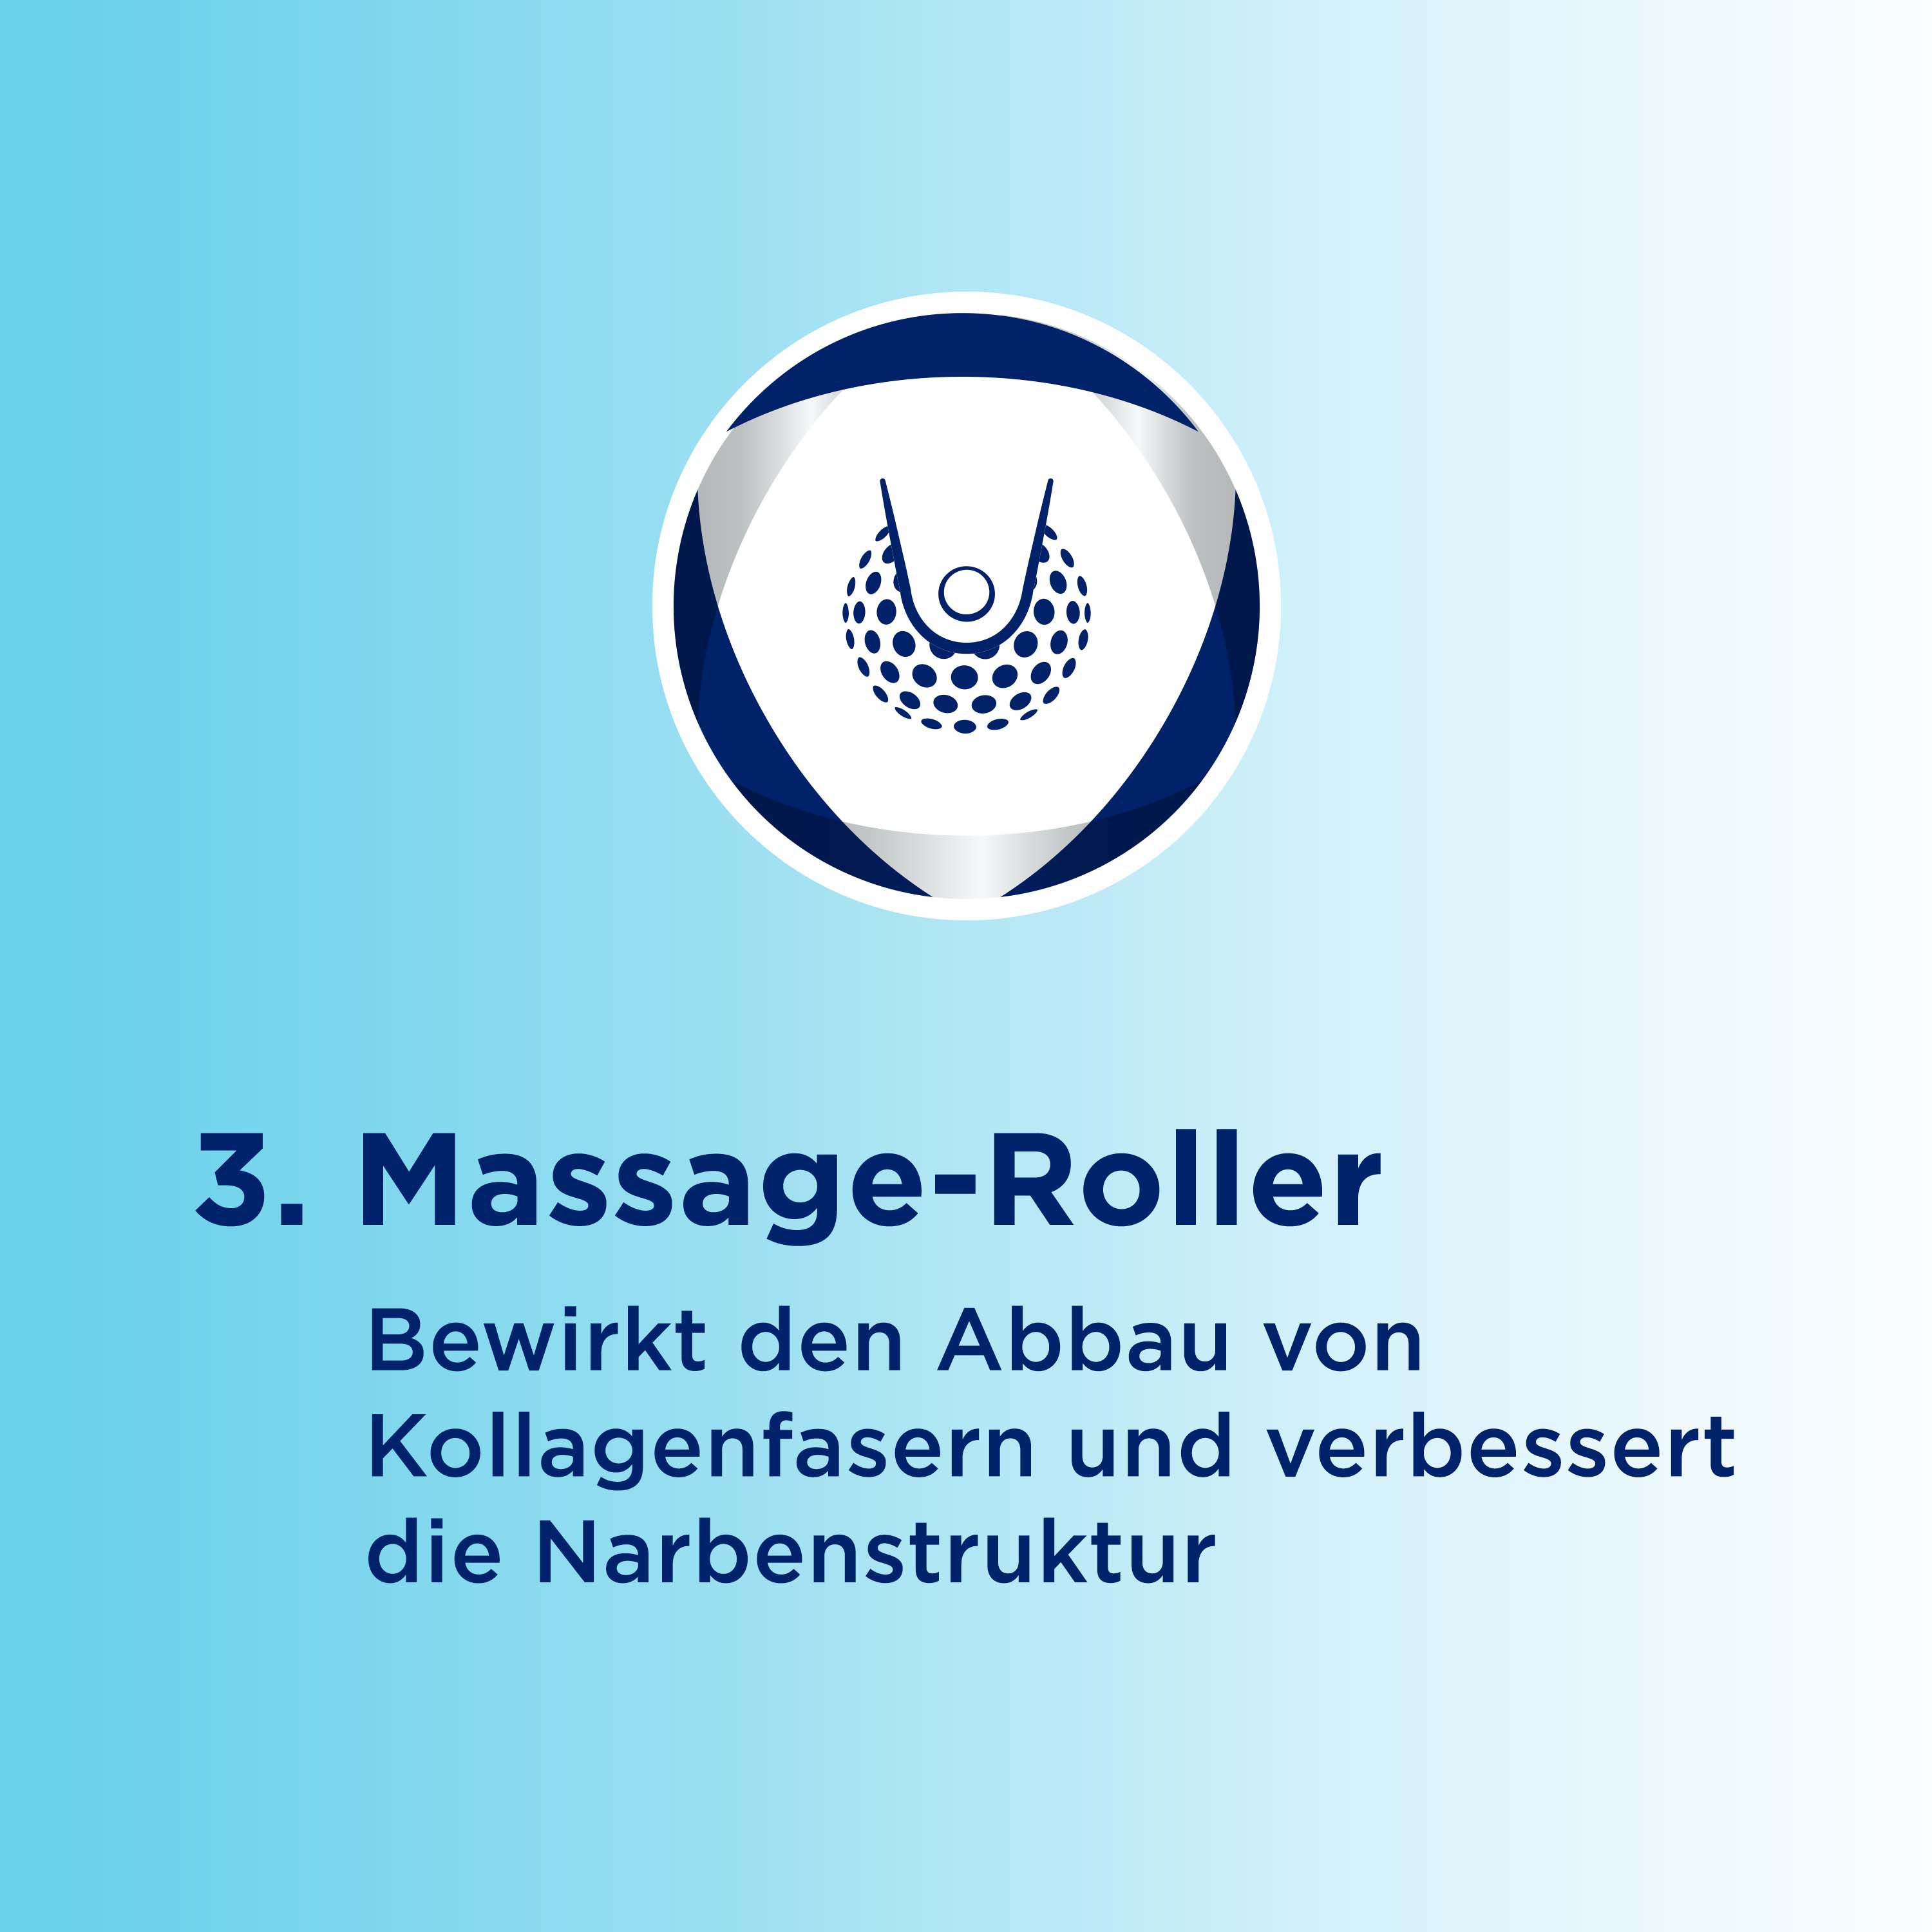 BEPANTHEN Narben-Gel mit Massage-Roller